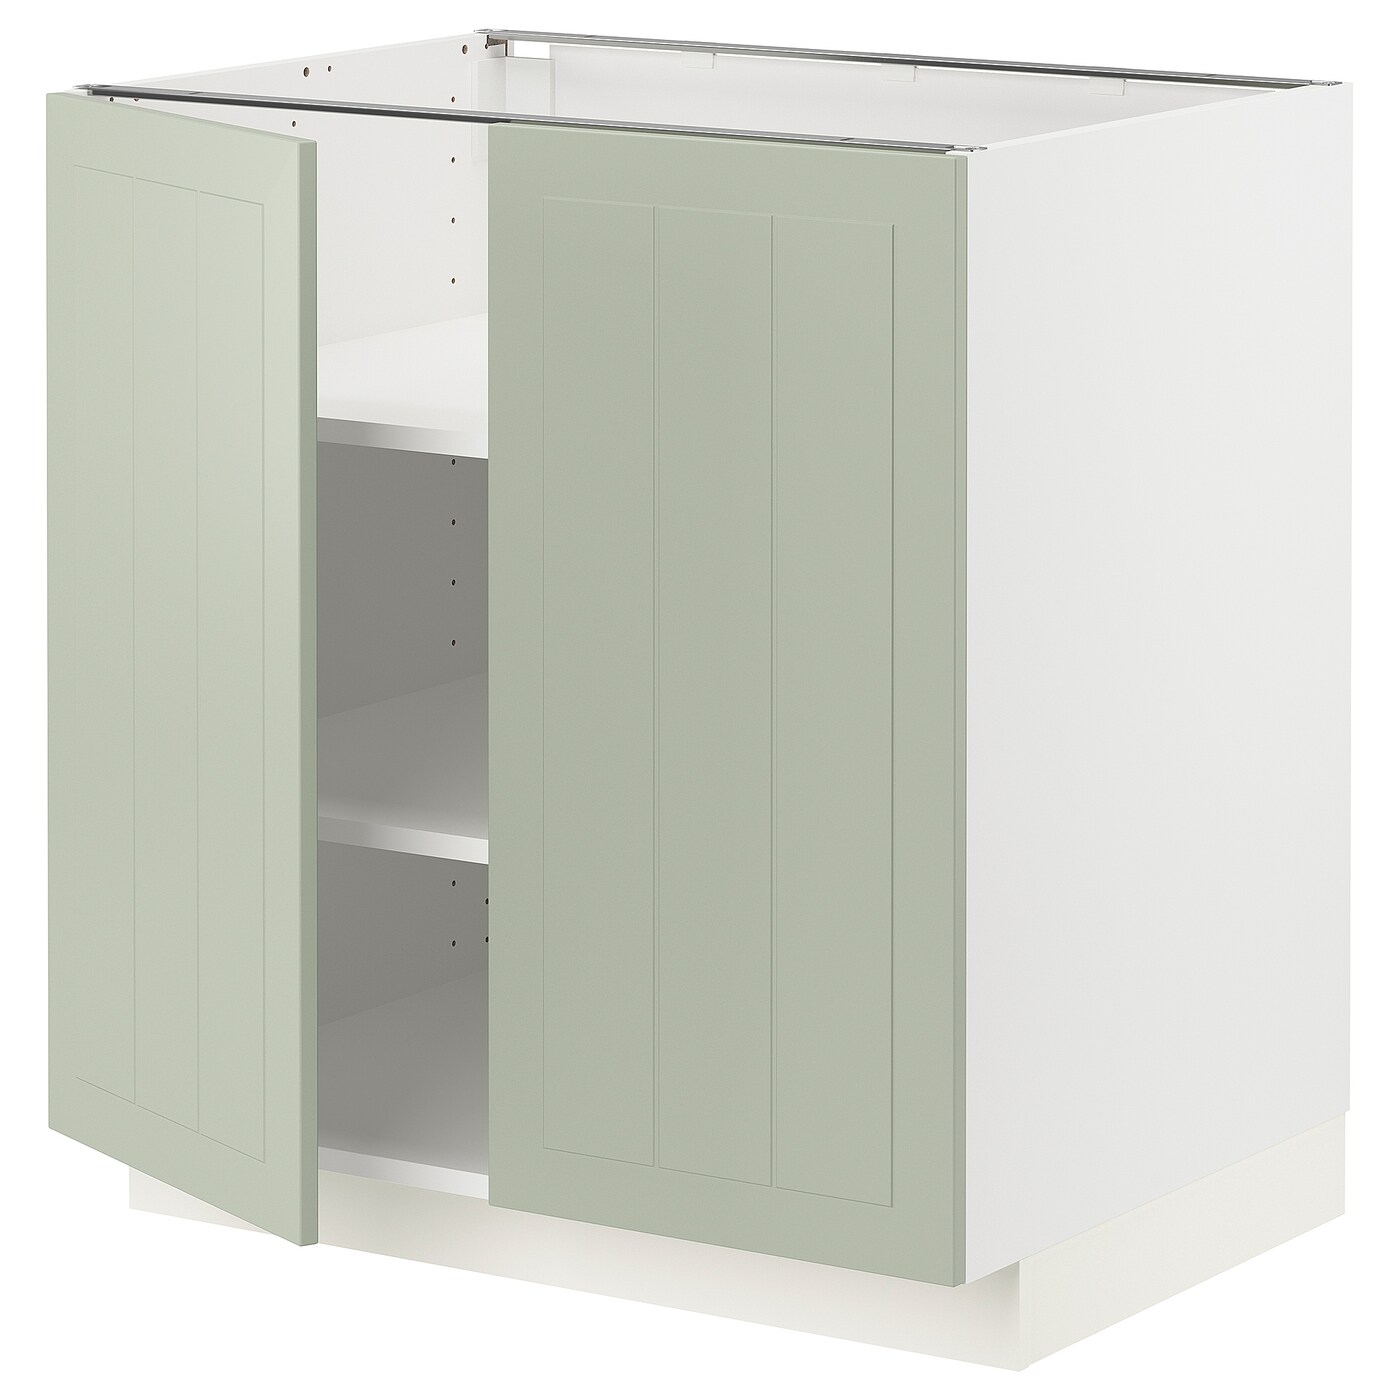 Напольный шкаф - IKEA METOD, 88x62x80см, белый/светло-зеленый, МЕТОД ИКЕА